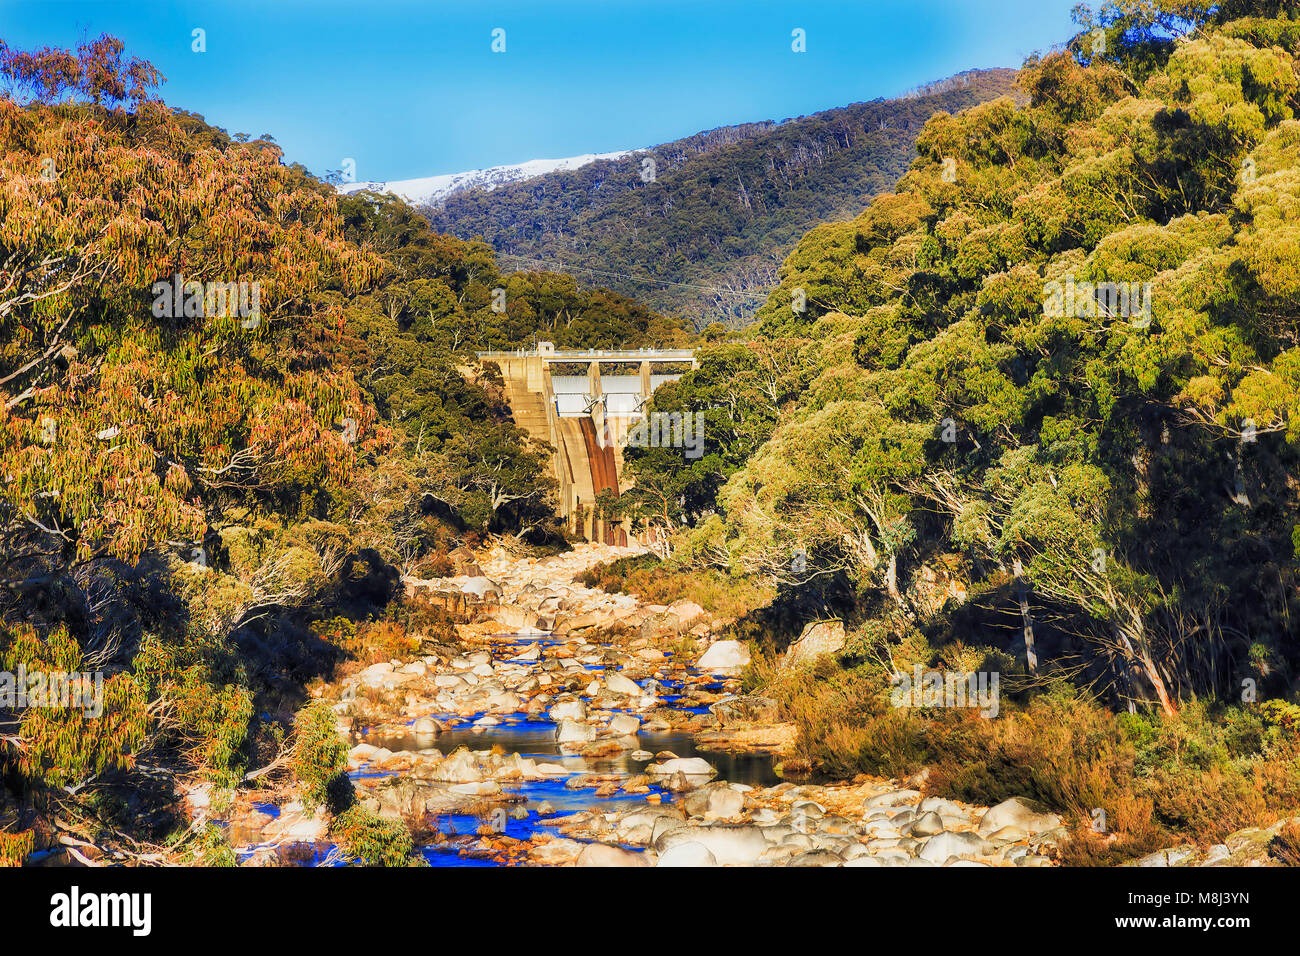 Damm auf Guthega Snowy River Fensterläden Mountain Stream von Wasser als Teil der Snowy hydro Stromerzeugung Regelung von NSW, Australien. Evergreen Gummi - Tre Stockfoto